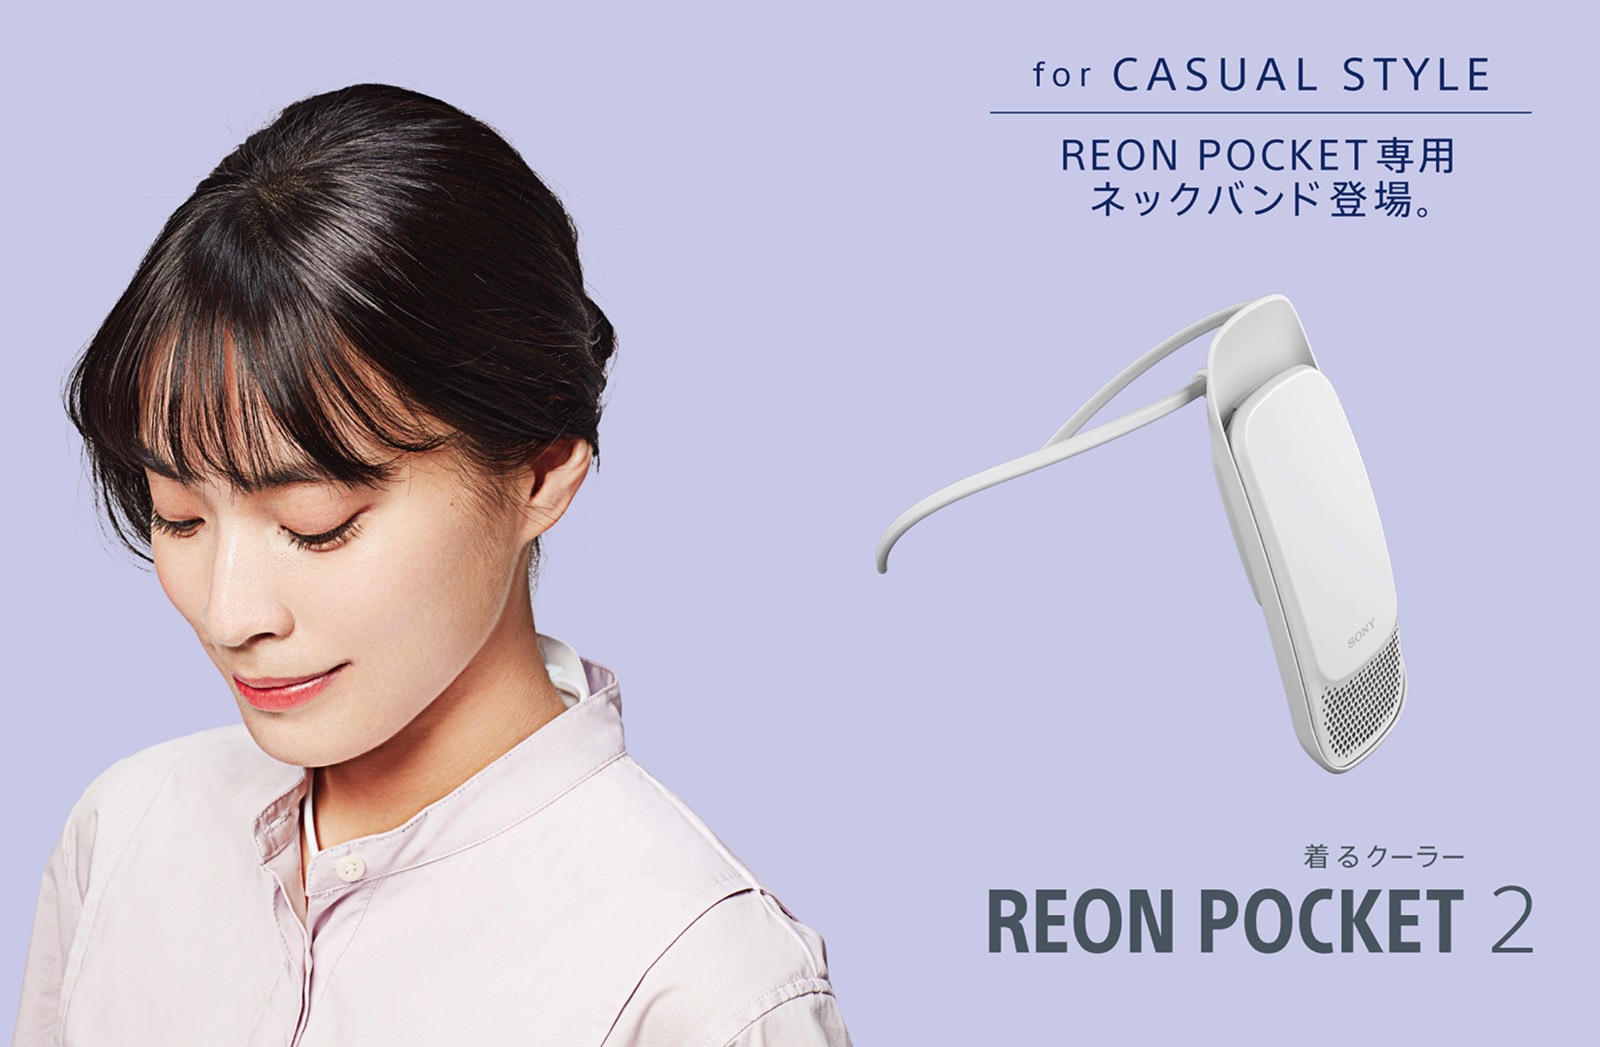 ネッククーラー ソニー REON POCKET 2 レオンポケット2 - 冷暖房/空調